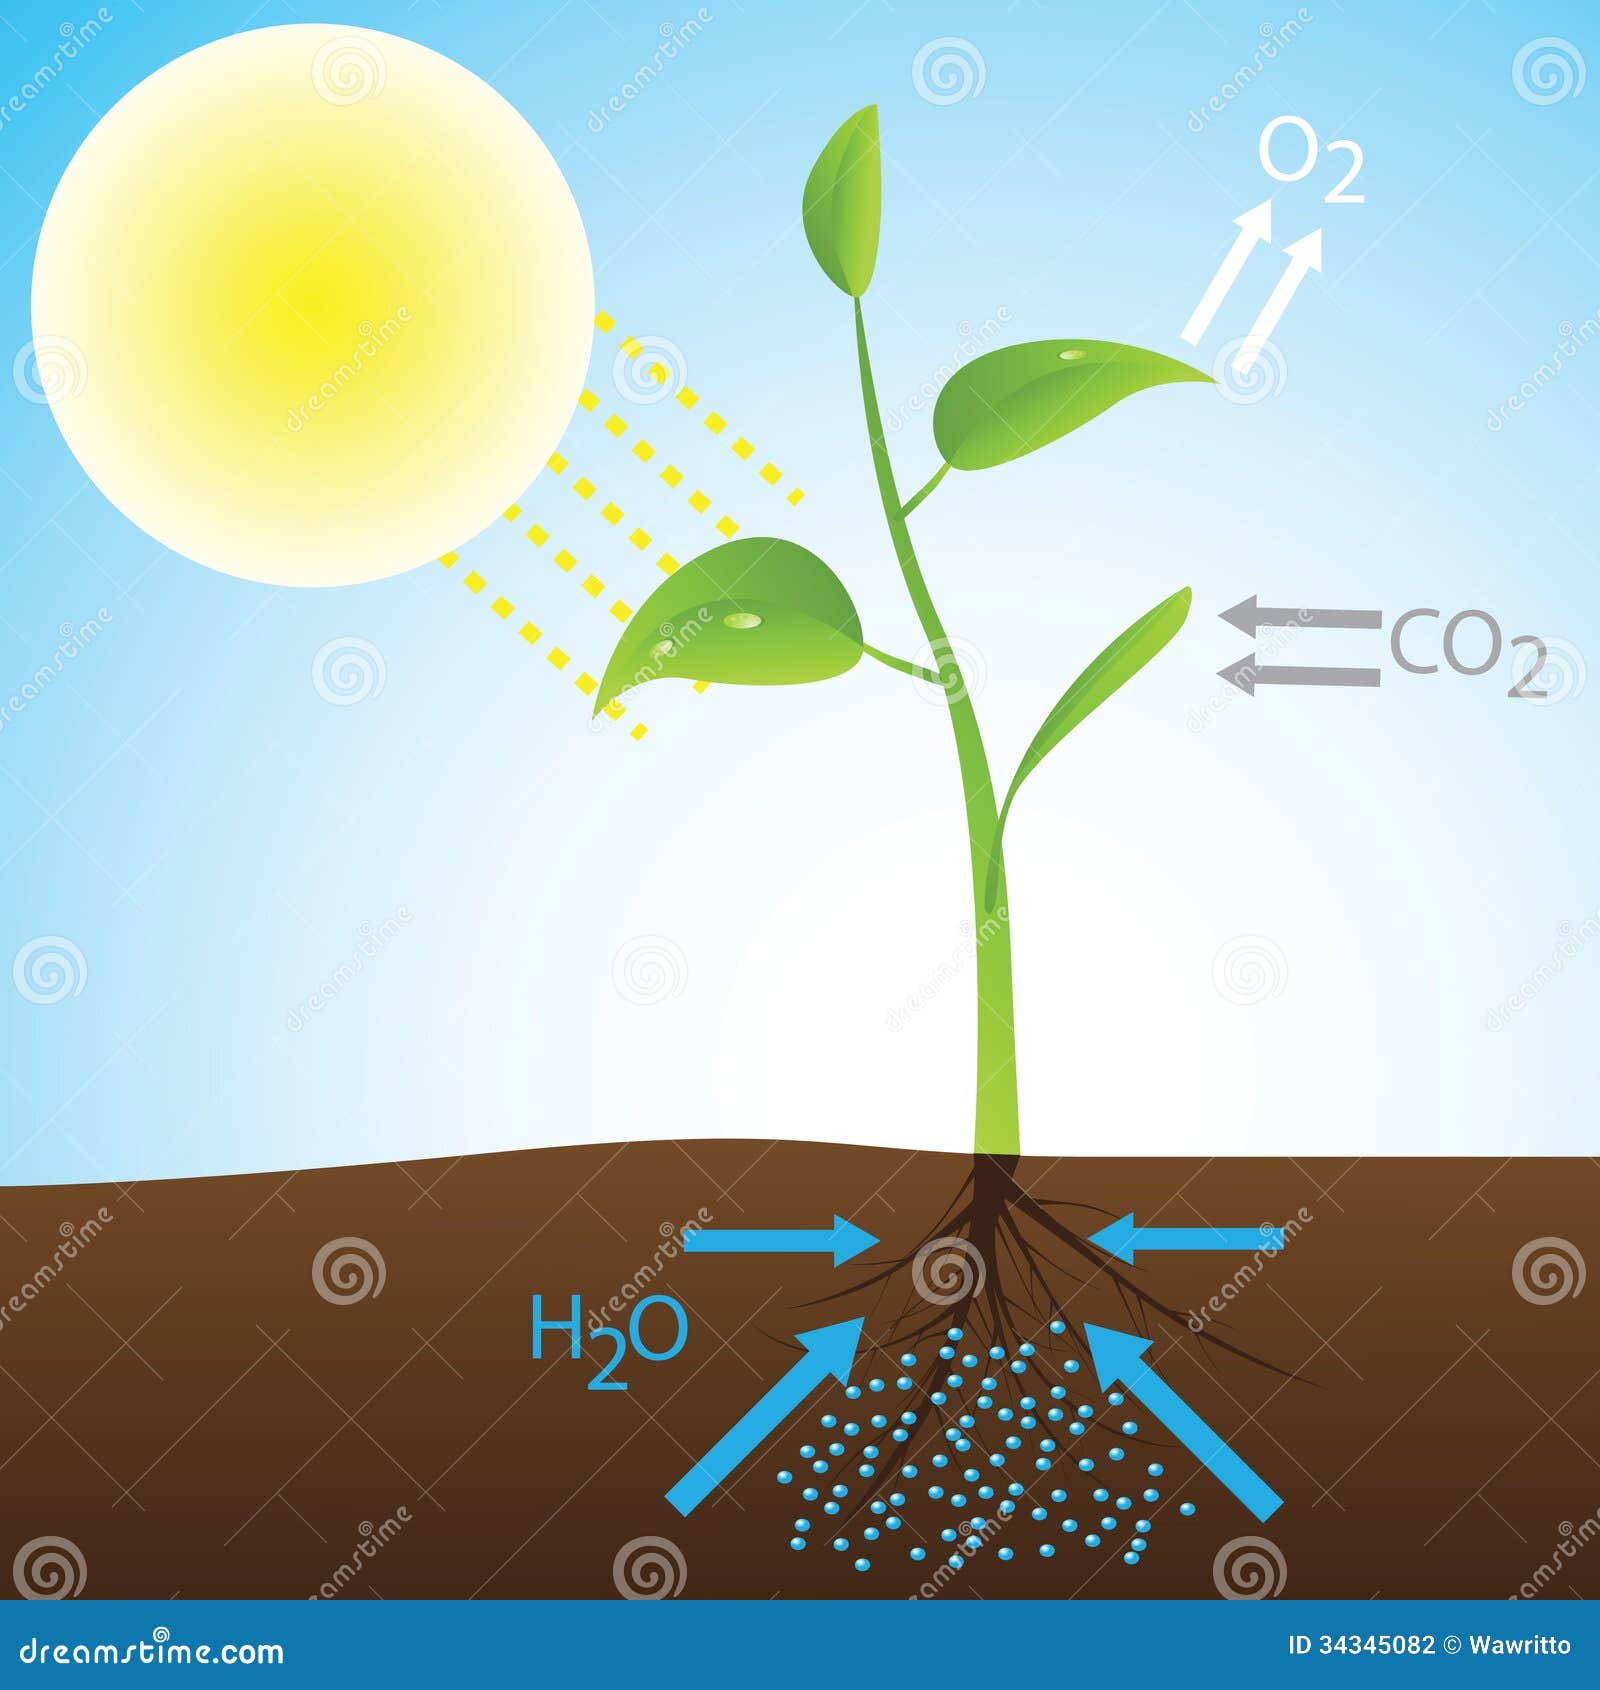 Теплая небесная вода для растений тоже. Солнечная энергия фотосинтез. Photosynthesis. Фотосинтез подсолнуха. Растения и кислород.